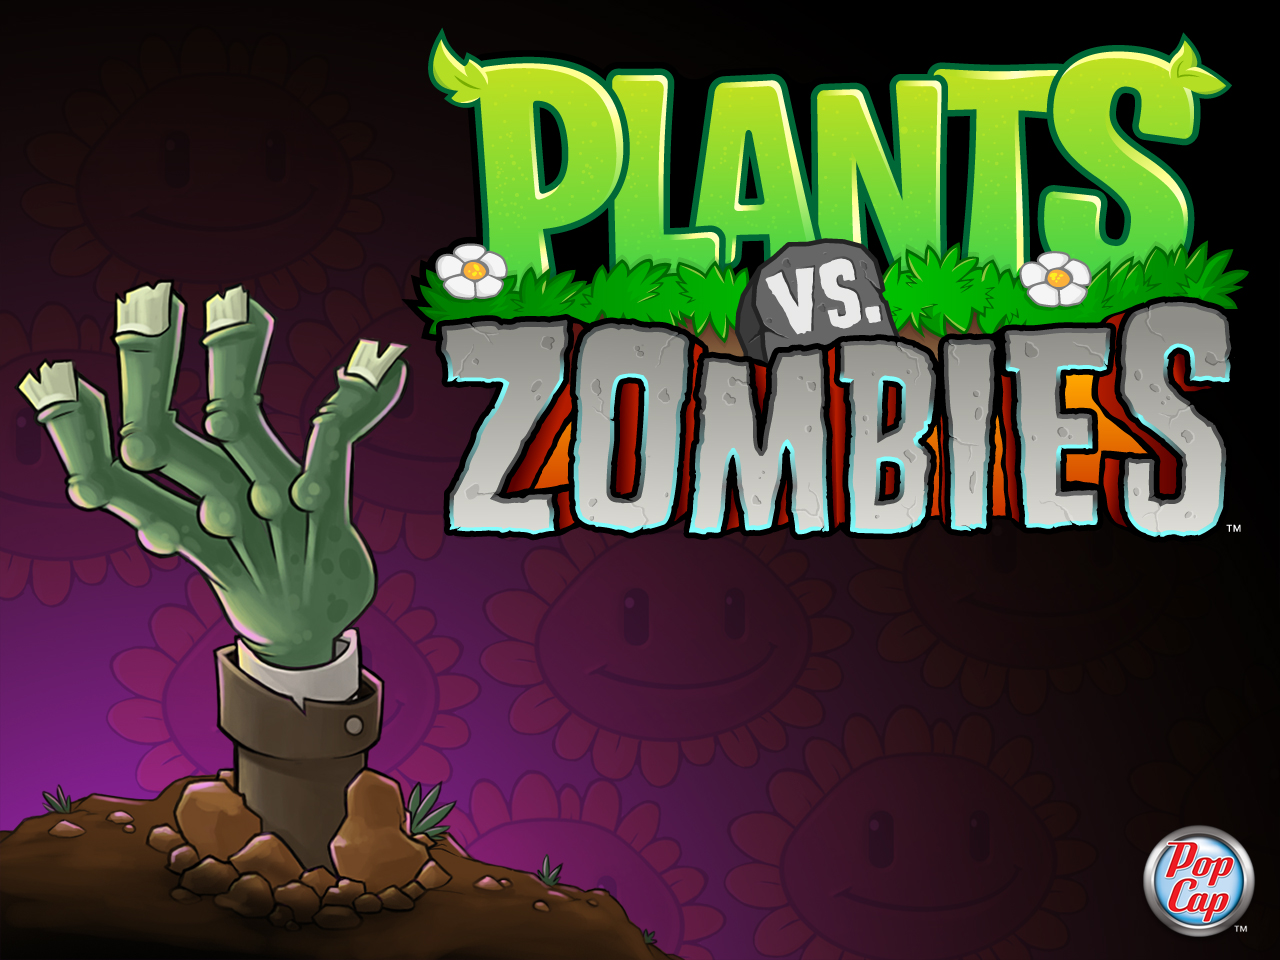 http://2.bp.blogspot.com/-BgGbJHclYI0/UGJSxtUPTLI/AAAAAAAAASY/y7RHCSpDgrg/s1600/Plant+vs.+Zombies.jpg